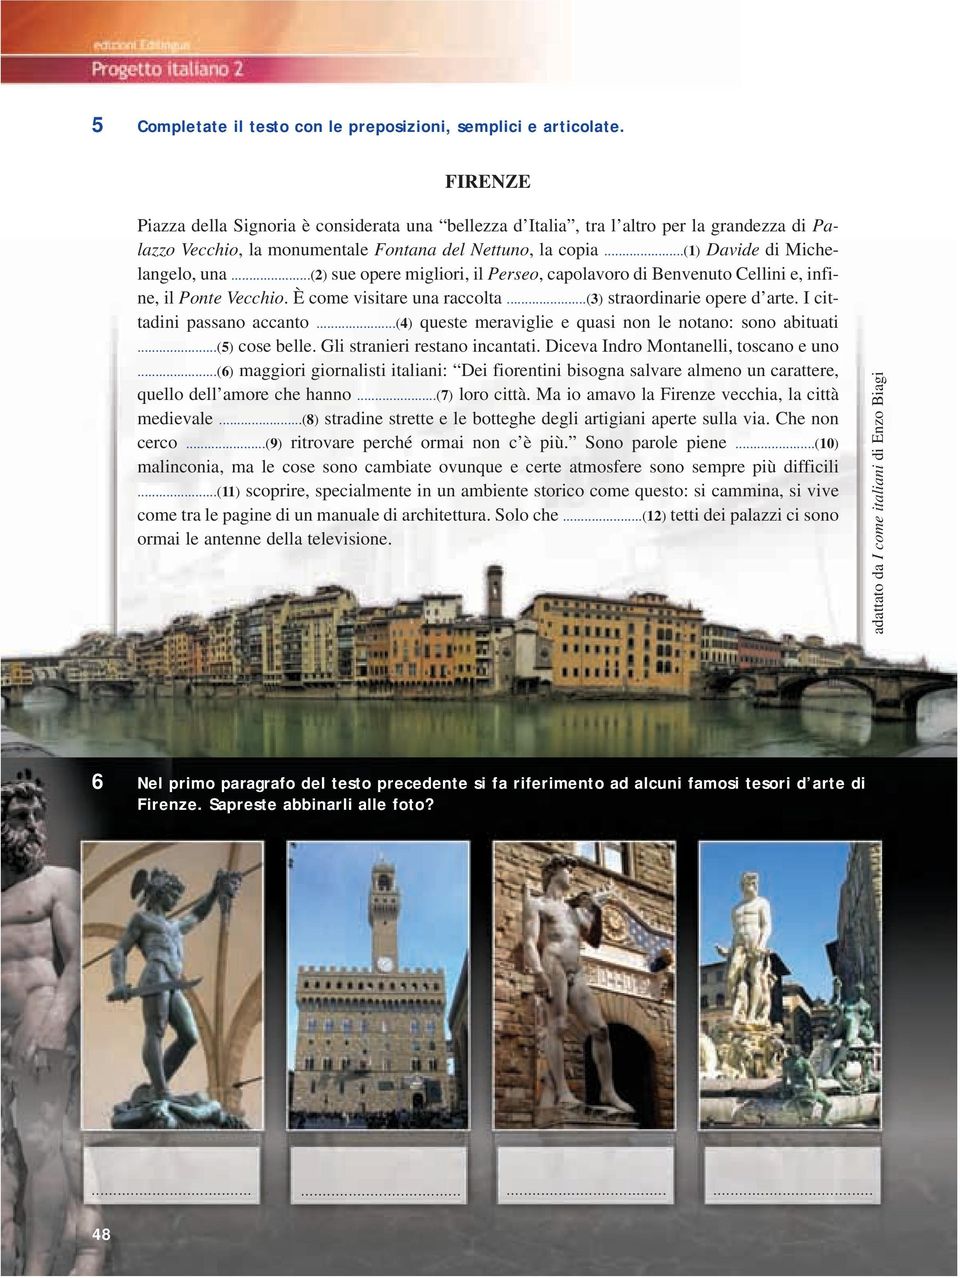 ..(2) sue opere migliori, il Perseo, capolavoro di Benvenuto Cellini e, infine, il Ponte Vecchio. È come visitare una raccolta...(3) straordinarie opere d arte. I cittadini passano accanto.